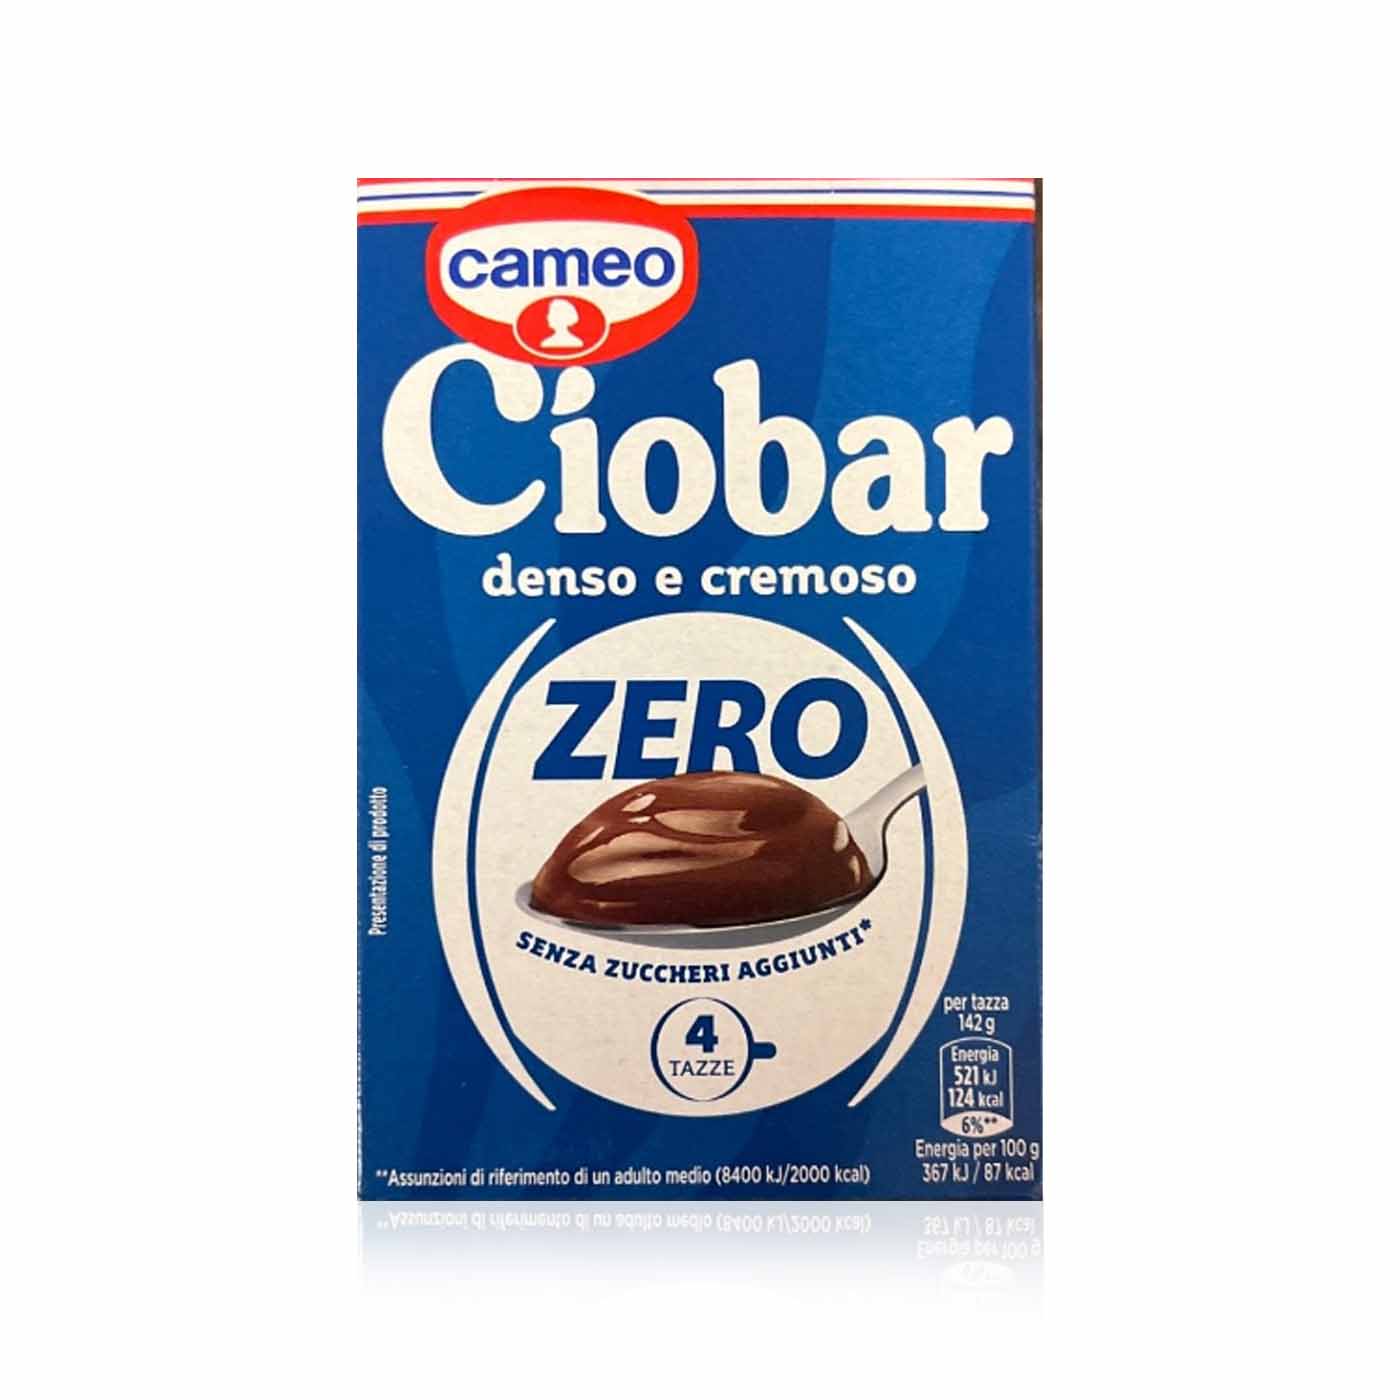 CAMEO Ciobar Zero- Heiße Schokolade zuckerfrei- 0,076kg - italienisch-einkaufen.de